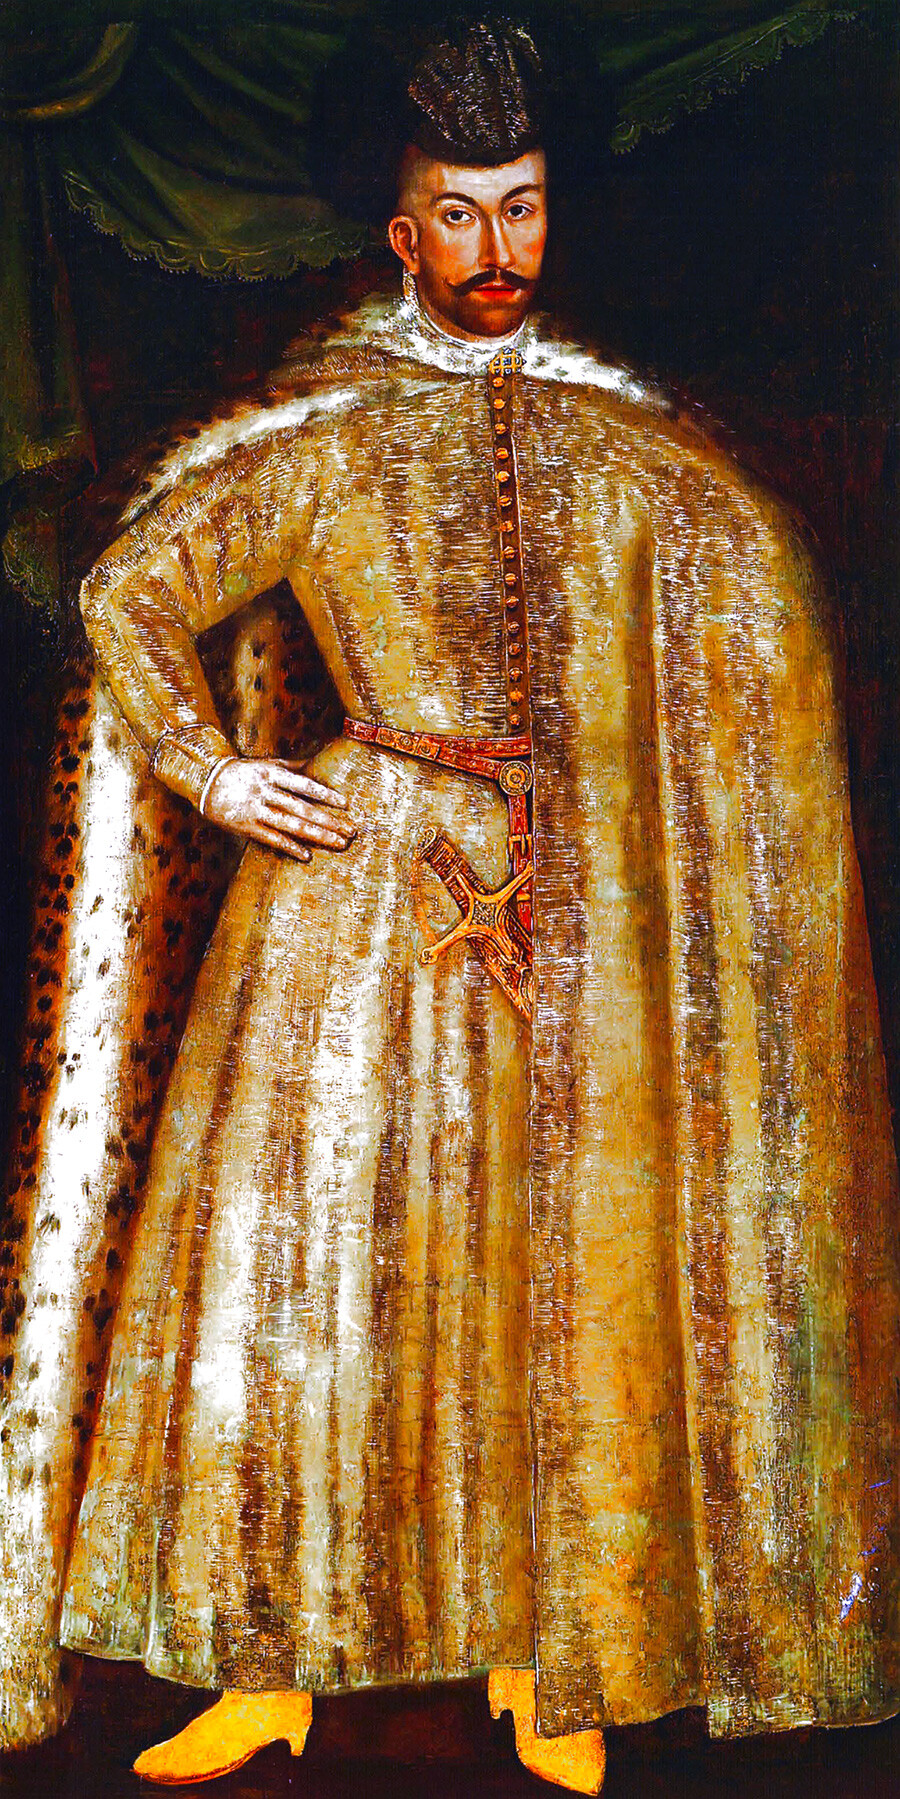 Simeone Bekbulatovich ritratto da un pittore sconosciuto, seconda metà del XVI secolo. Simeone Bekbulatovich, nipote della seconda moglie dello zar, era di conseguenza il nipote dello zar